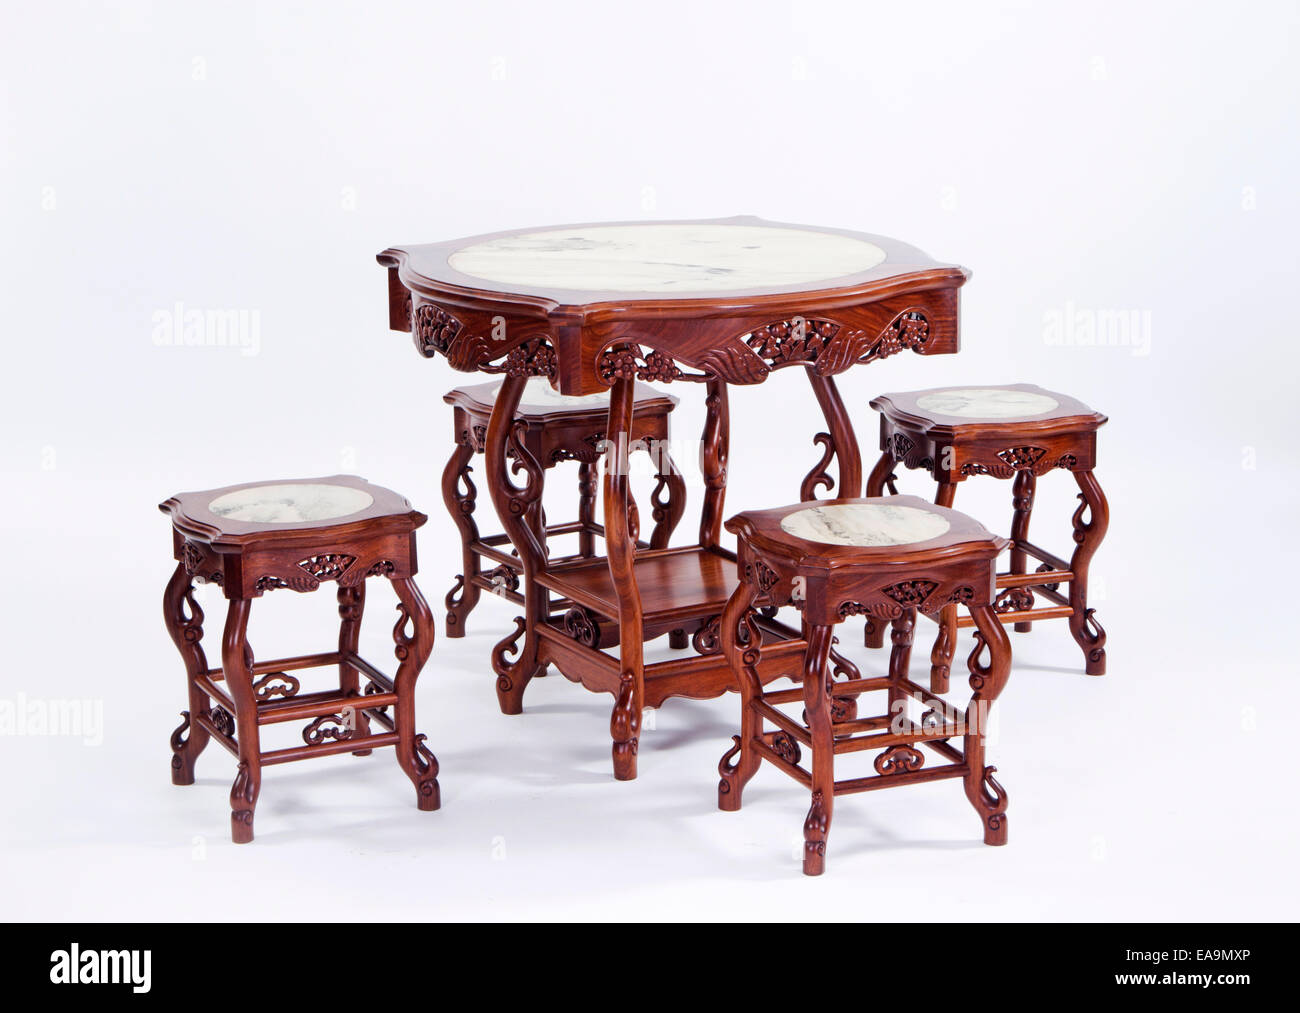 Chinesische Tische und Stühle Stockfotografie - Alamy